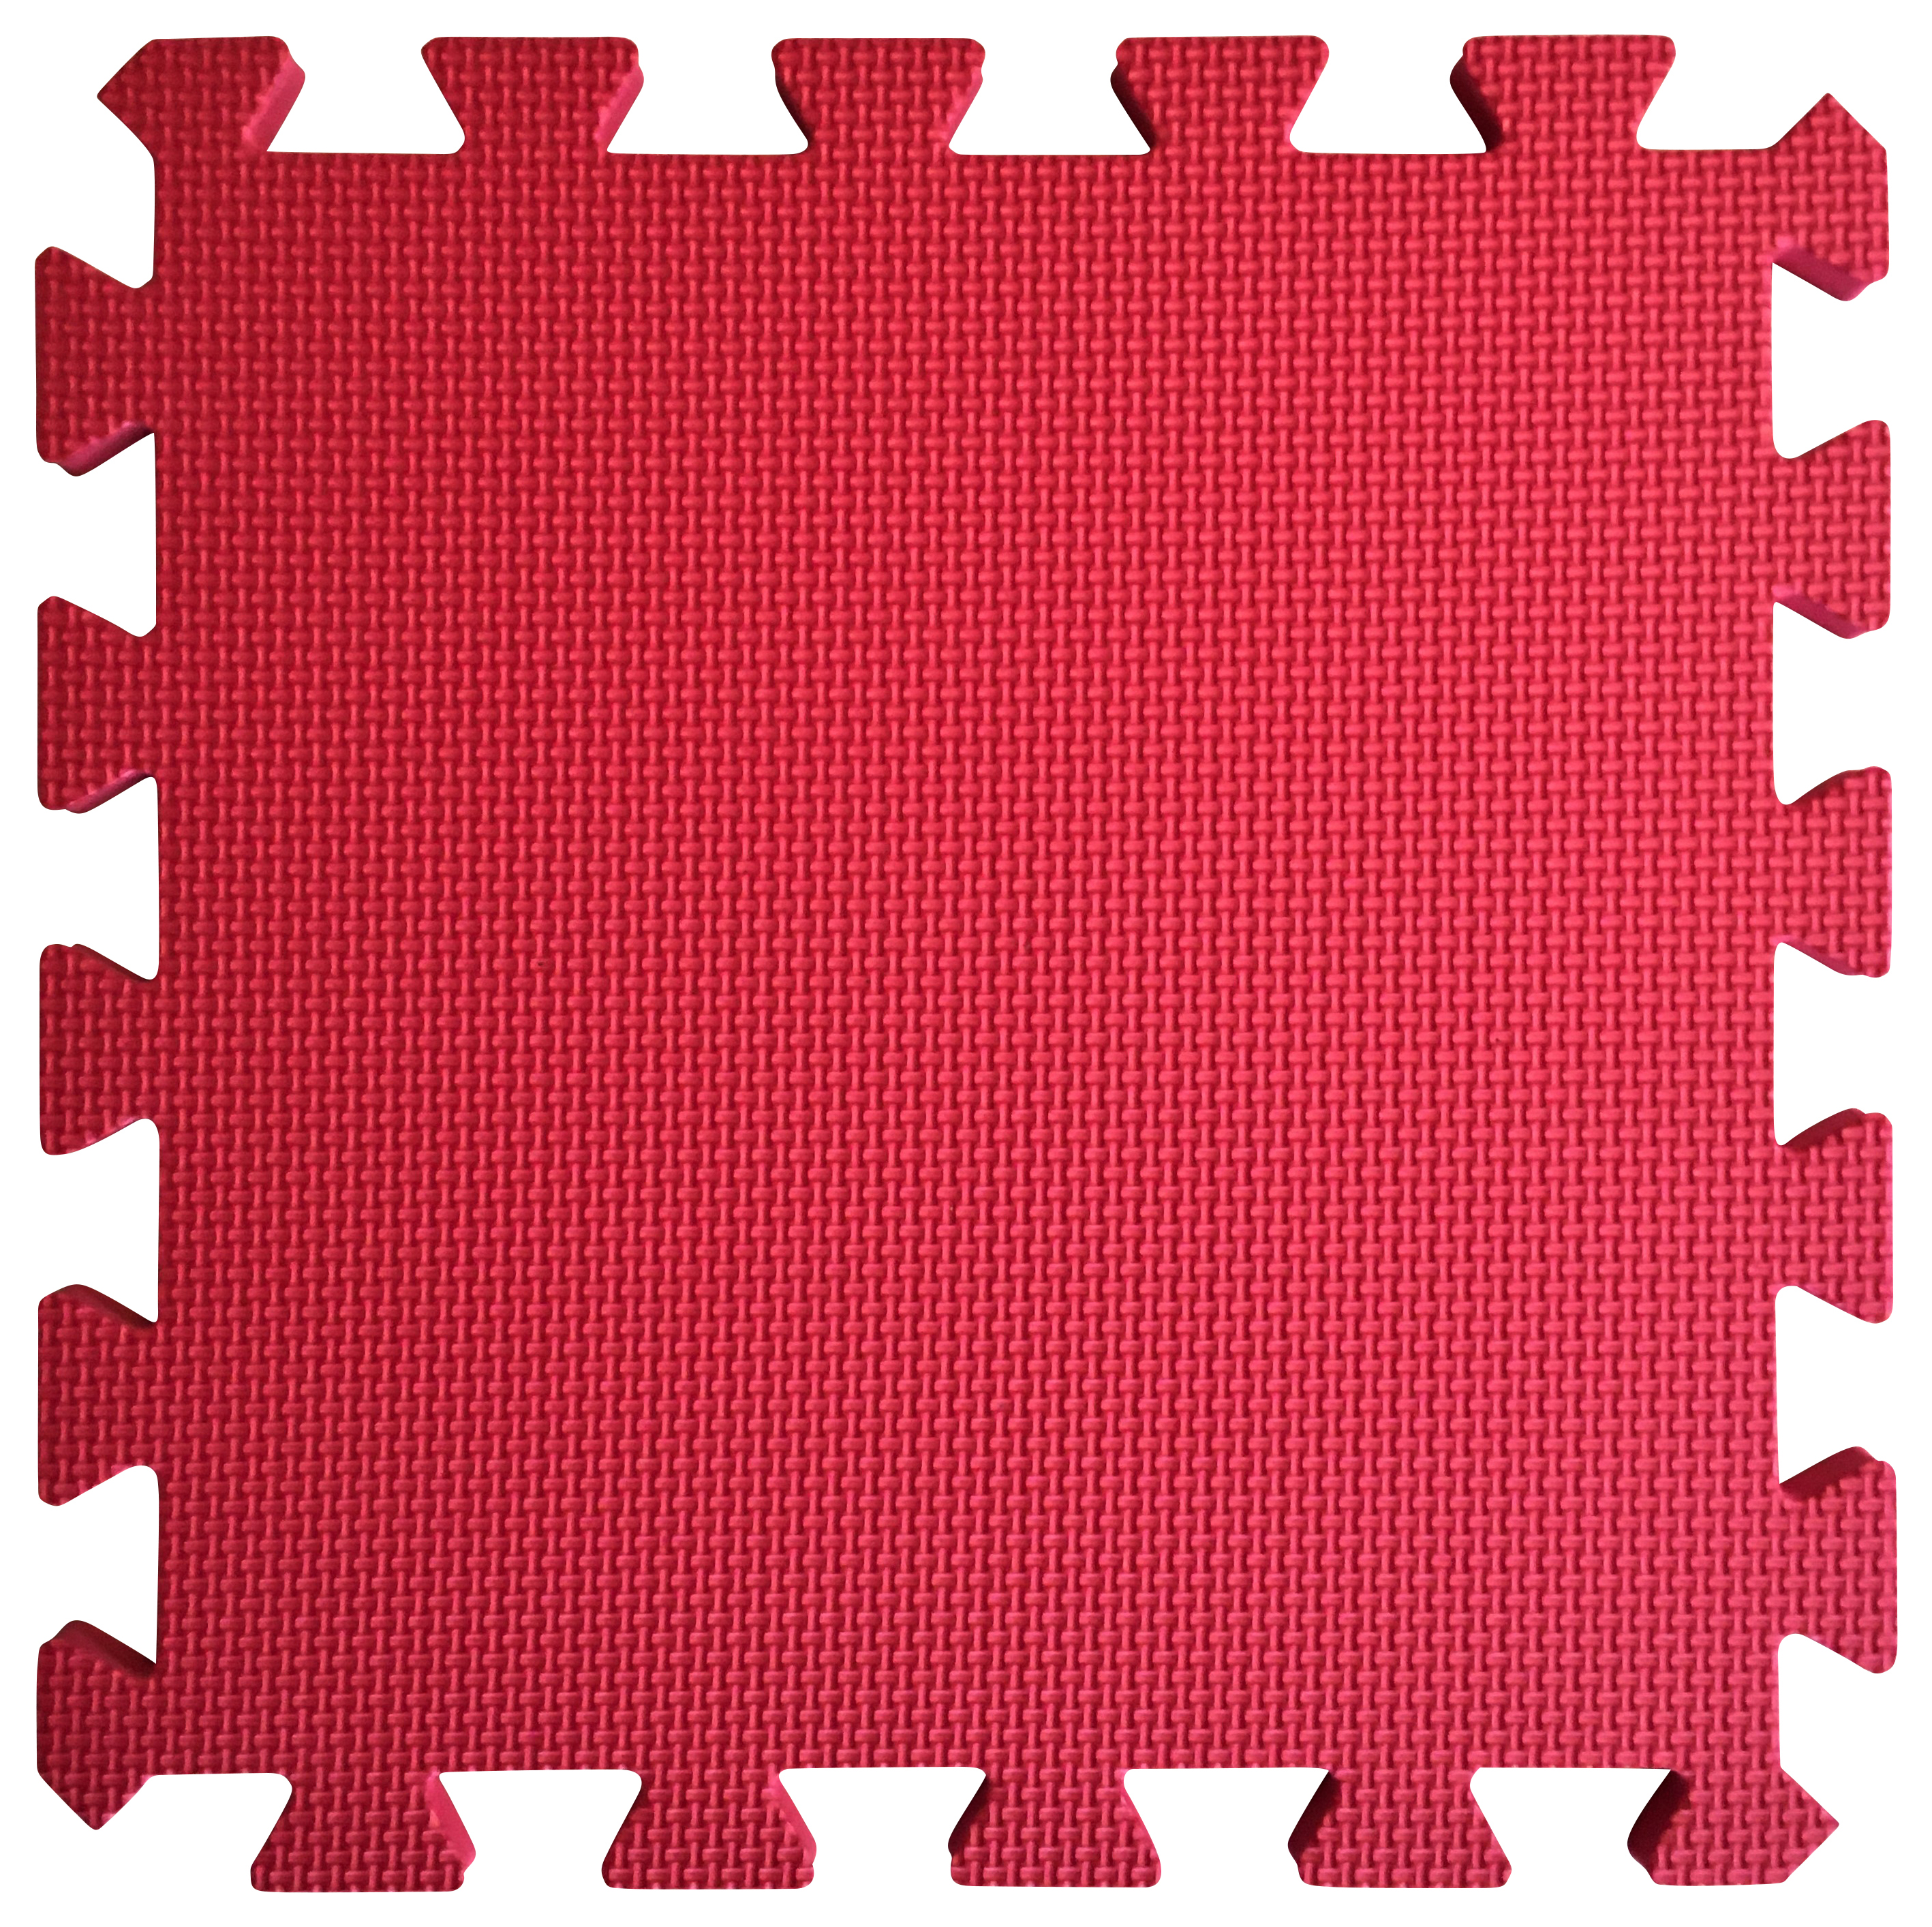 Image of Warm Floor Red Interlocking Floor Tiles for Garden Buildings - 4 x 8ft